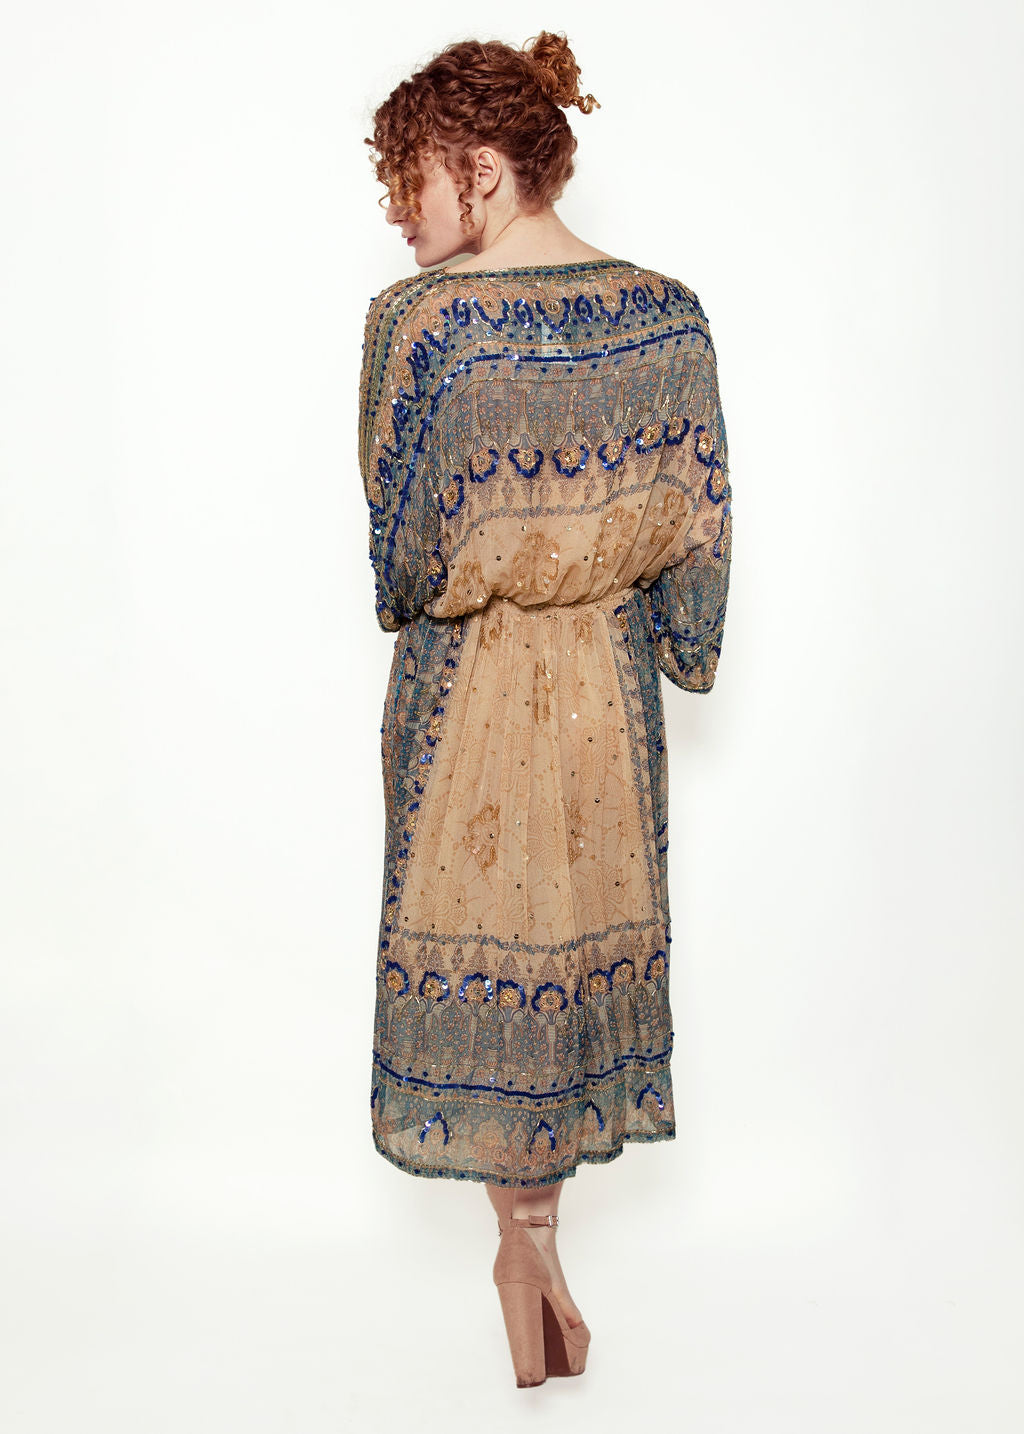 Judith Ann Indian Silk & Sequin Dress